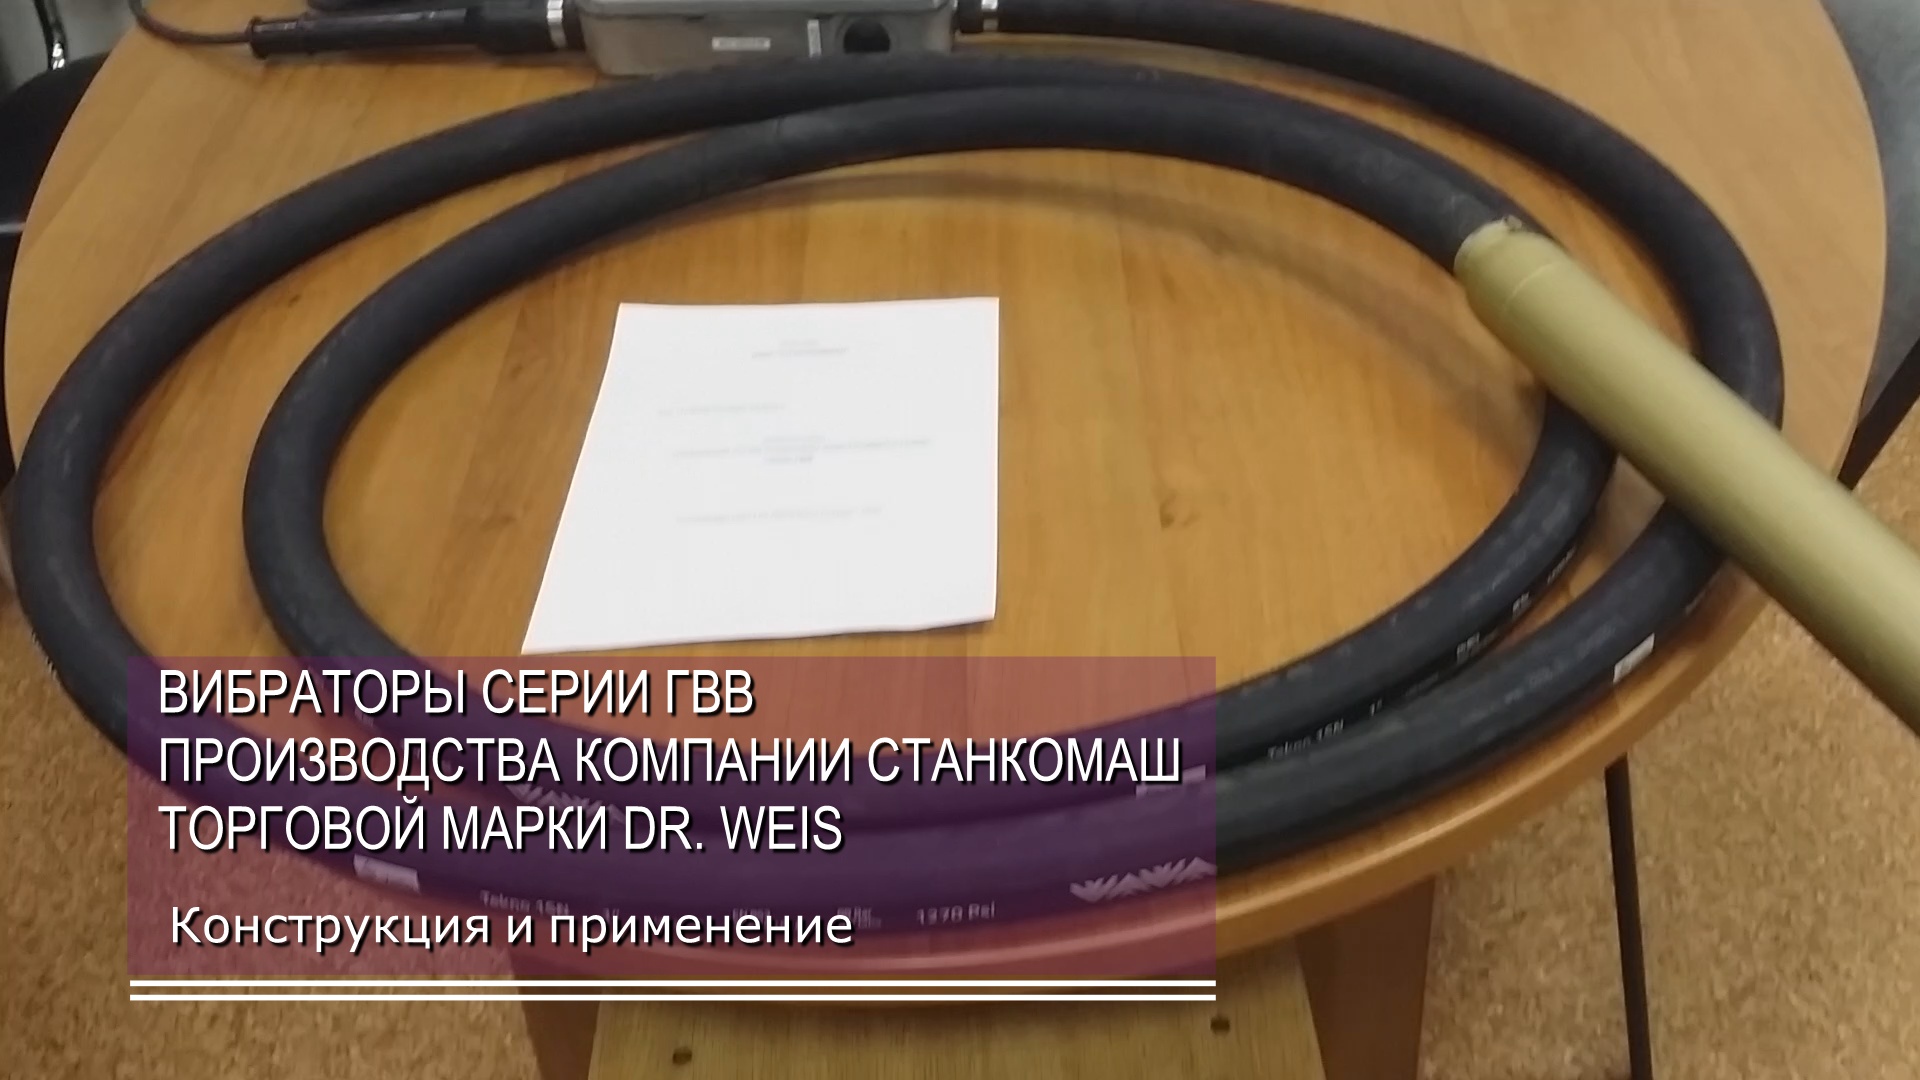 Электрические глубинные вибраторы серии ГВВ производства компании Станкомаш